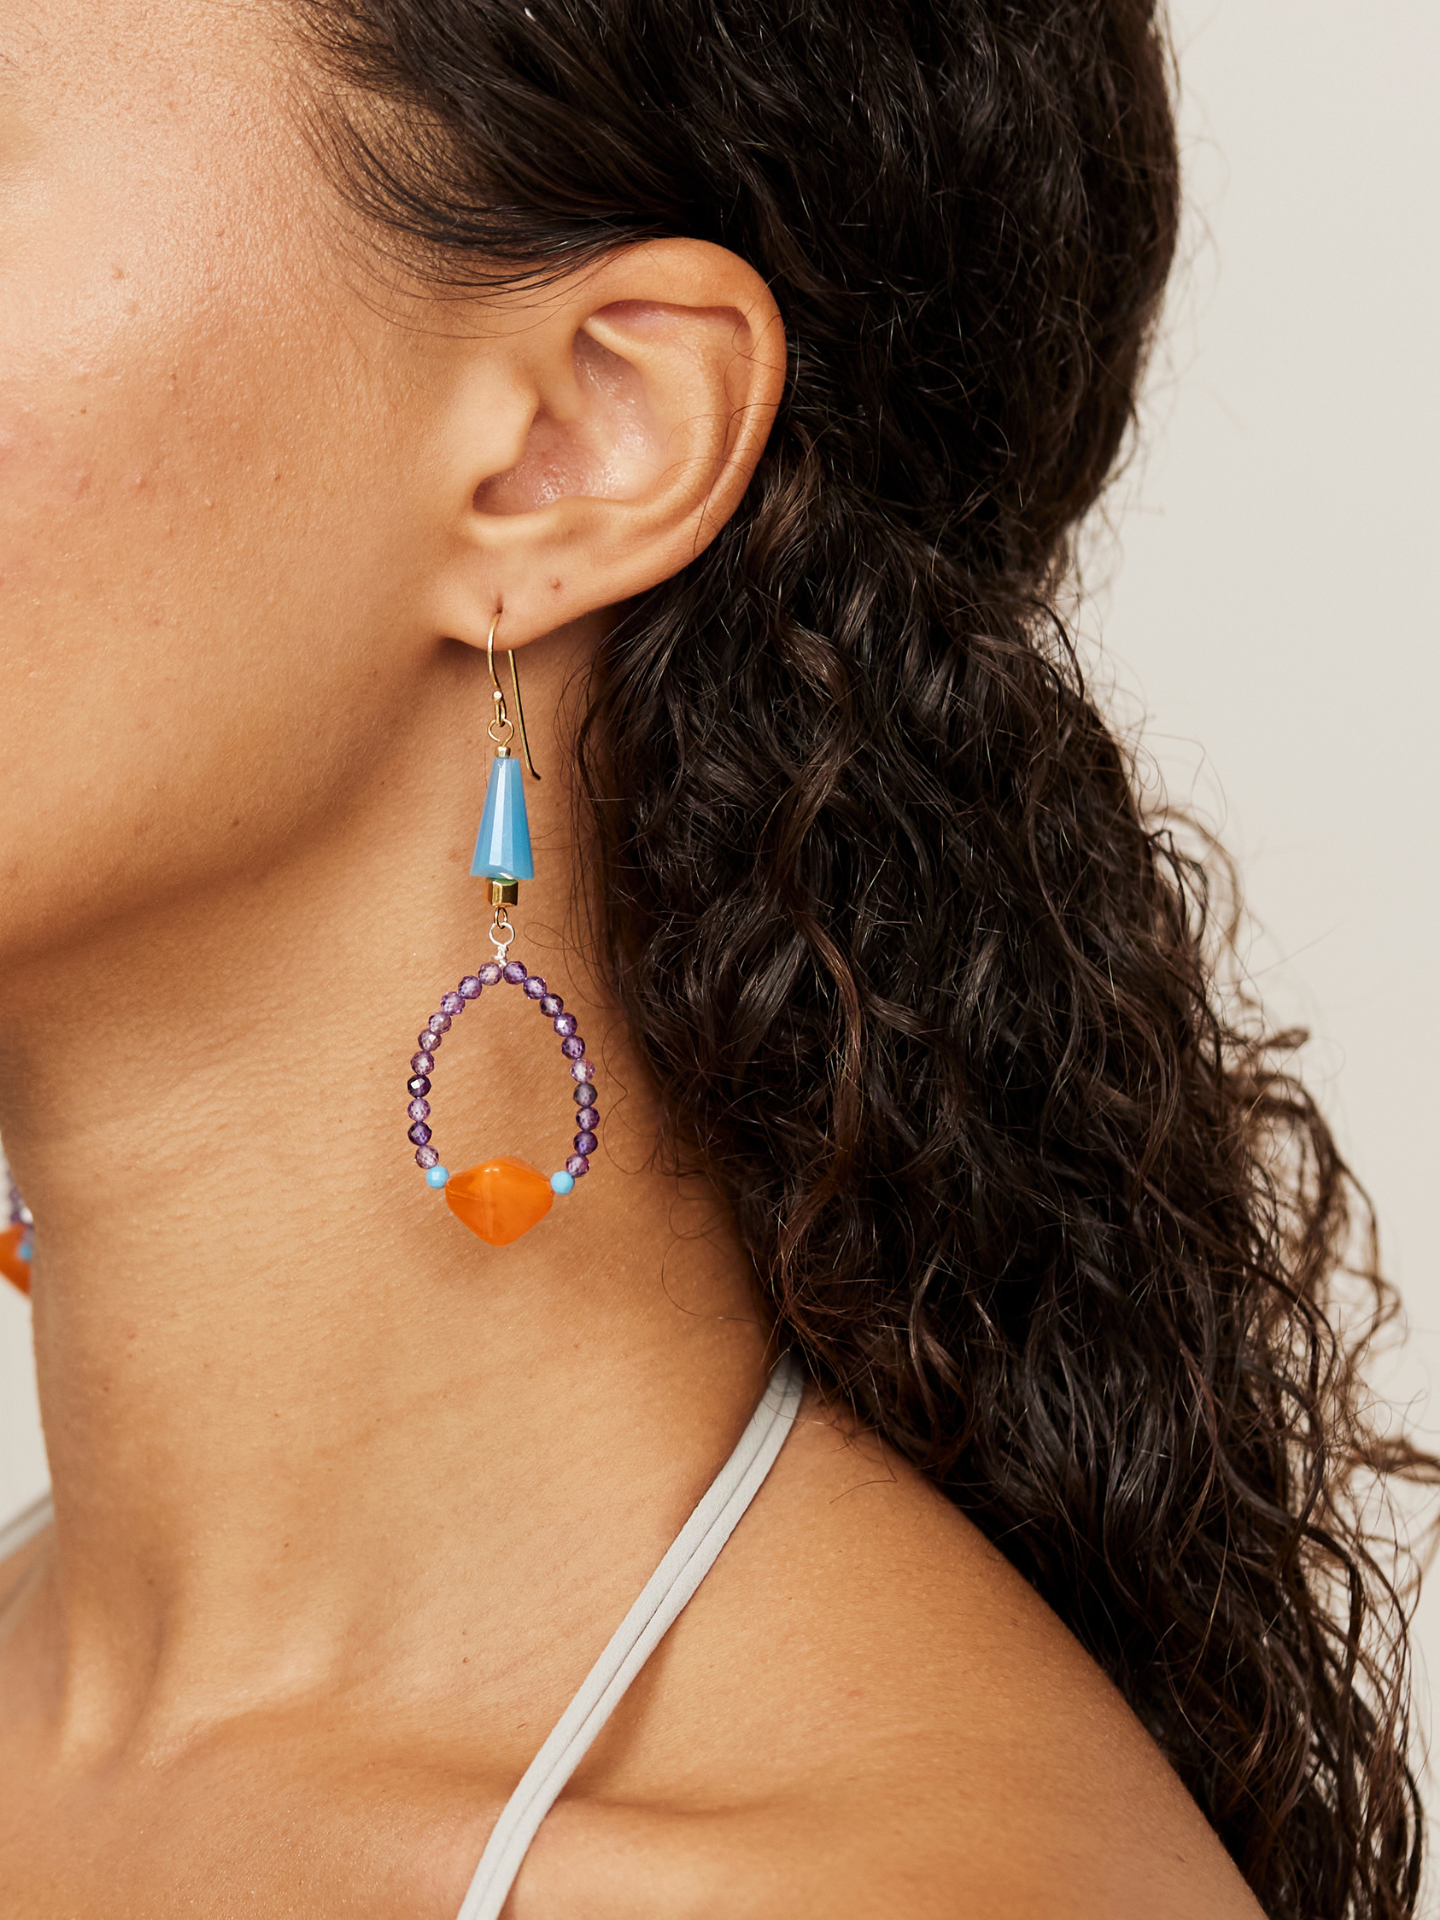 Großaufnahme eines wunderschönen, bunten Ohrrings, der aus violetten, blauen Steinen und einer Orangenen Perle besteht.